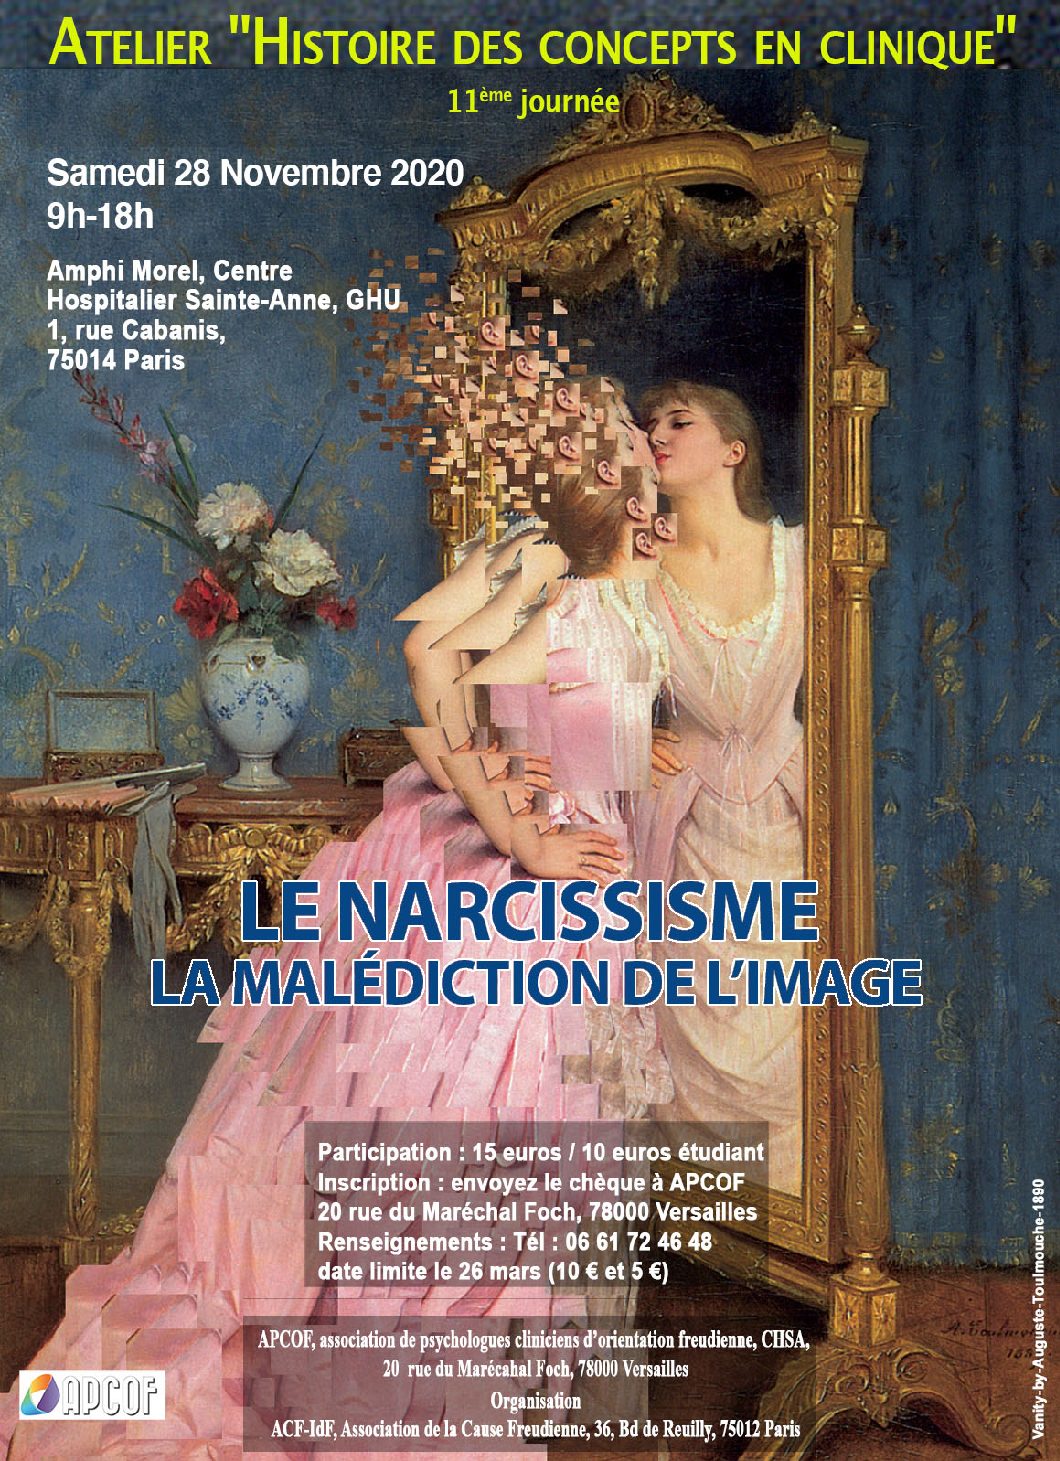 11ème Journée atelier Histoire des concepts - Le narcissisme, la malédiction de l'image